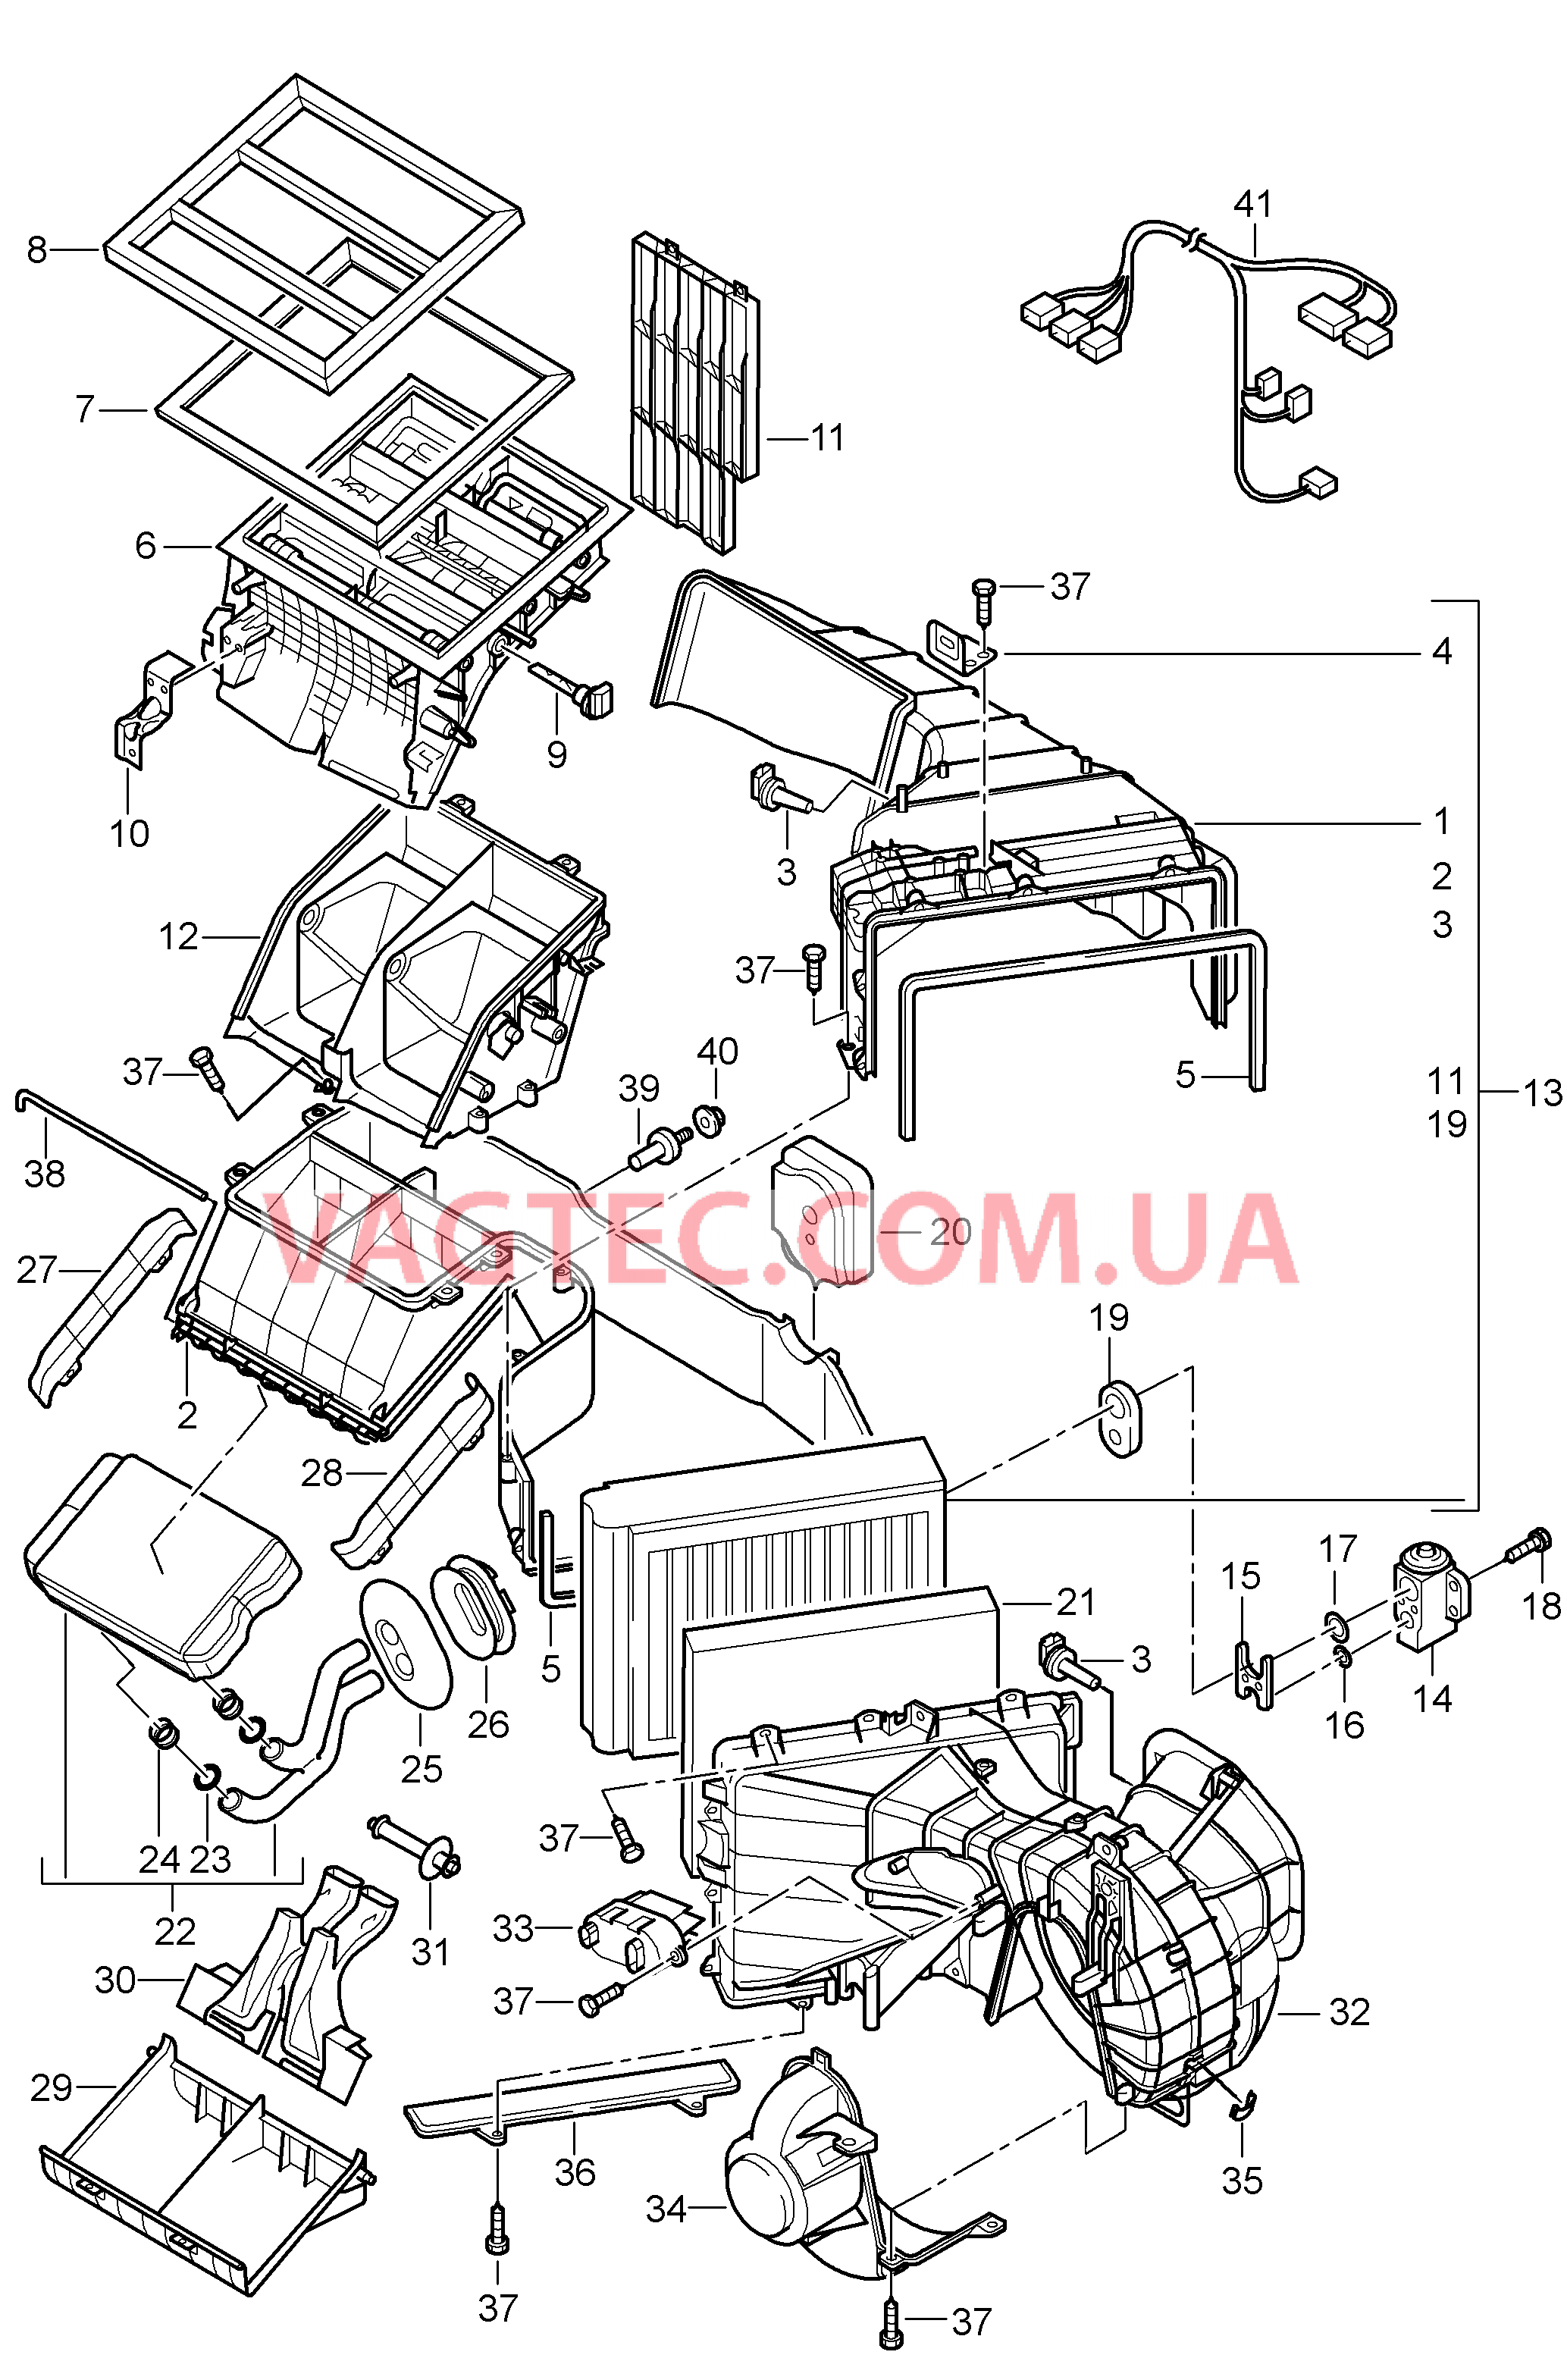 813-040 Кондиционер, передний, Отдельные детали для PORSCHE Cayenne 2003-2006USA